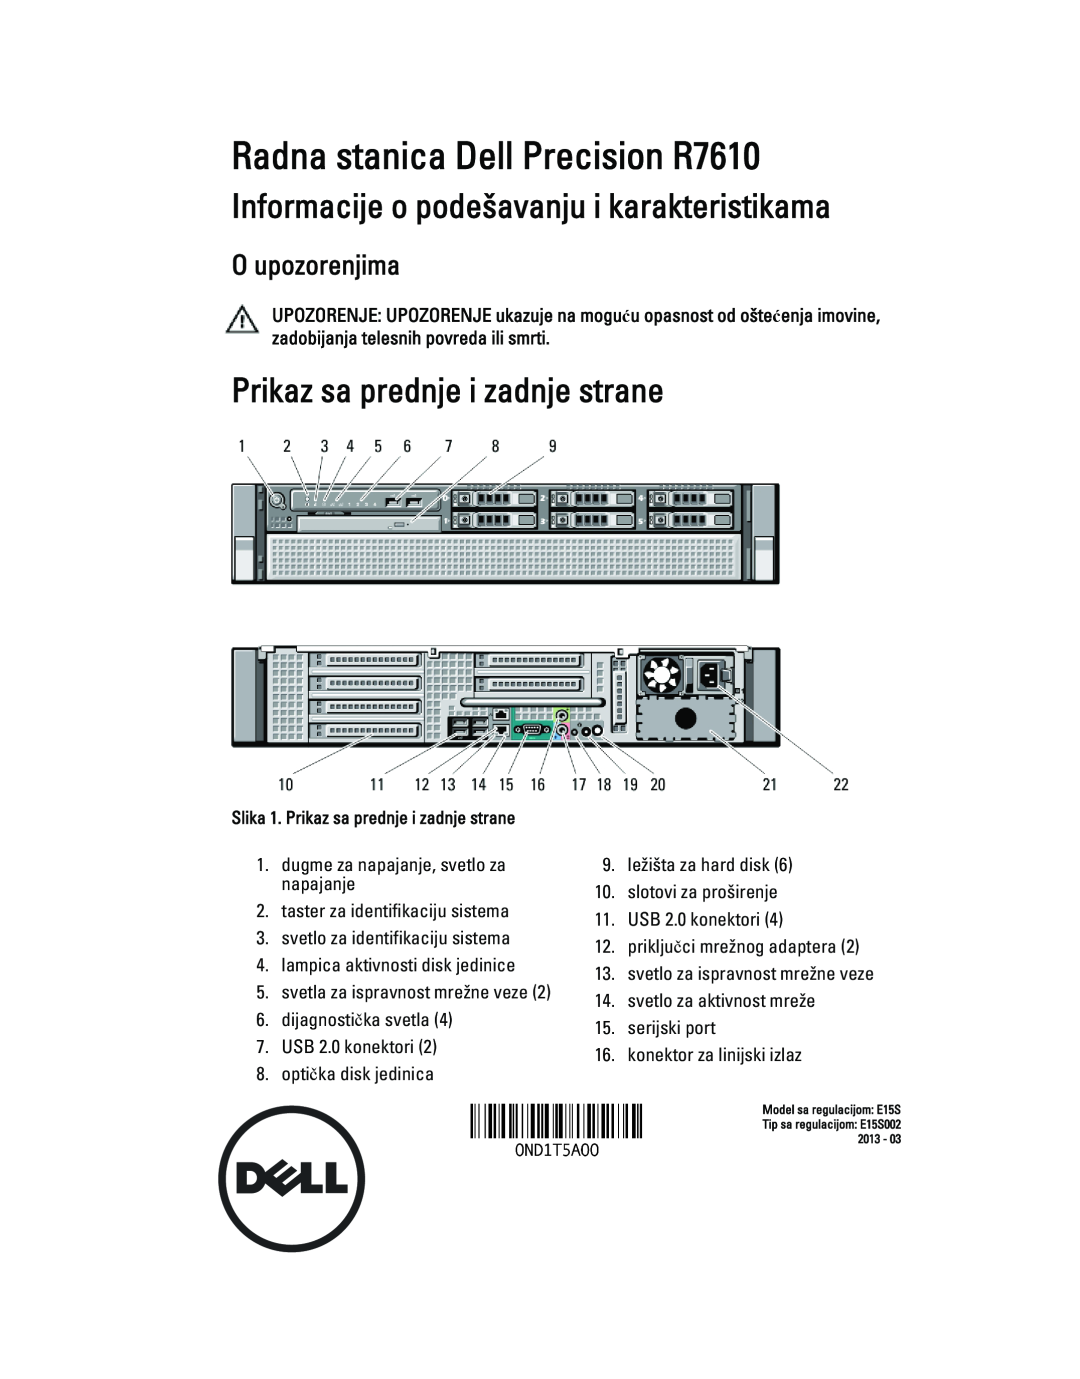 Dell R7610 manual Informacije o podešavanju i karakteristikama, Prikaz sa prednje i zadnje strane, O upozorenjima 